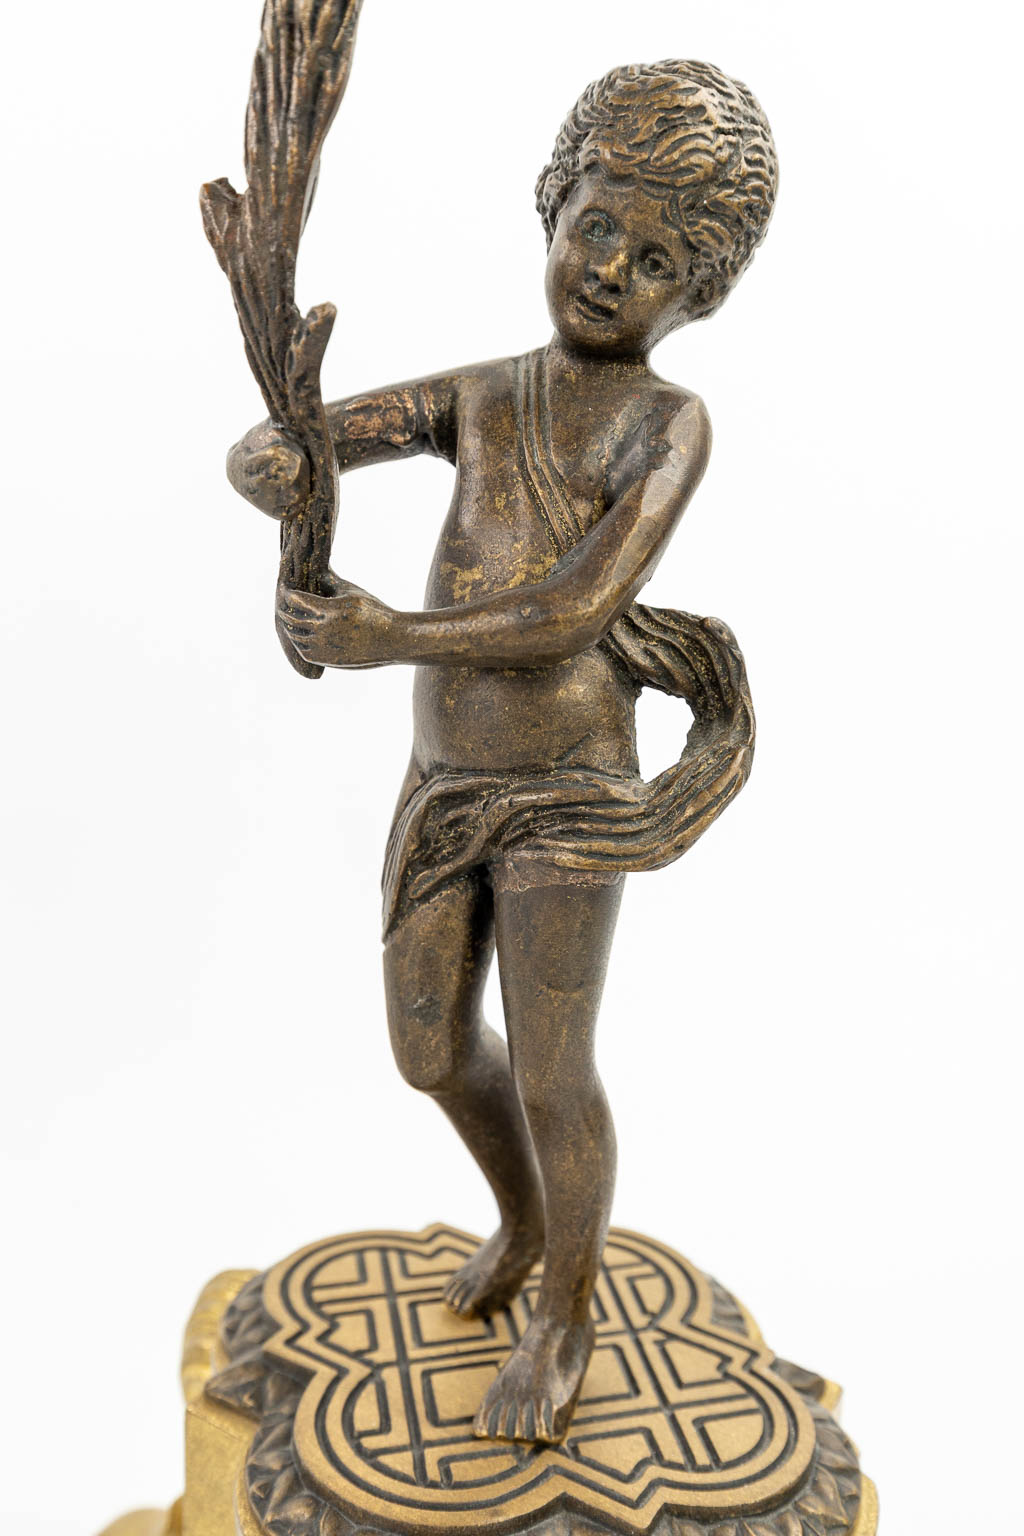 Een driedelige schouwgarnituur gemaakt uit verguld en gepolijst brons, versierd met putti. (H:46cm)